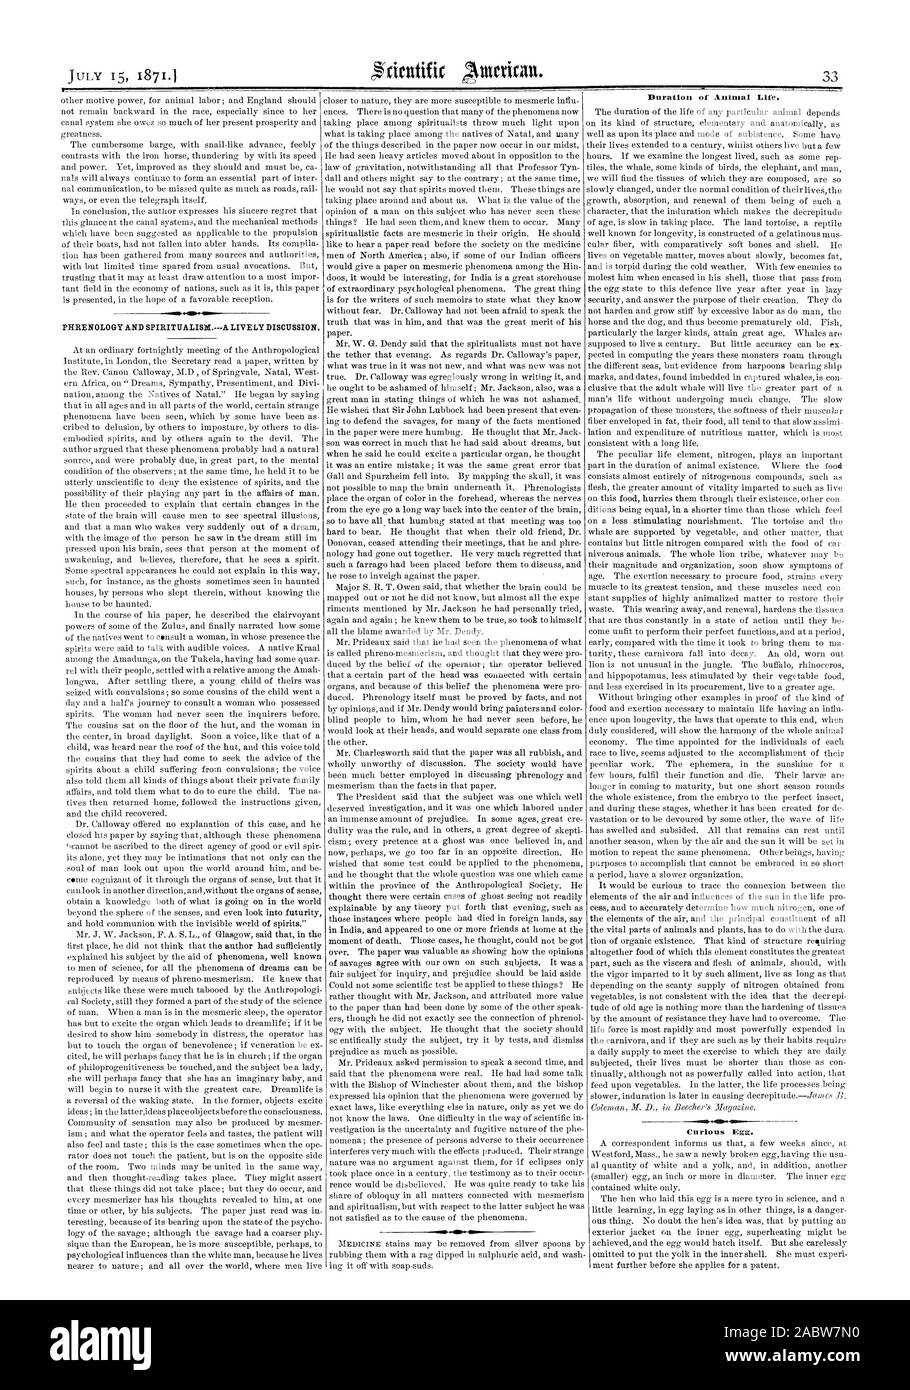 PHROENOLOGY und SPIRITUALISMUS. Eine lebhafte Diskussion. Dauer des tierischen Lebens. Neugierig Ei., Scientific American, 1871-07-15 Stockfoto